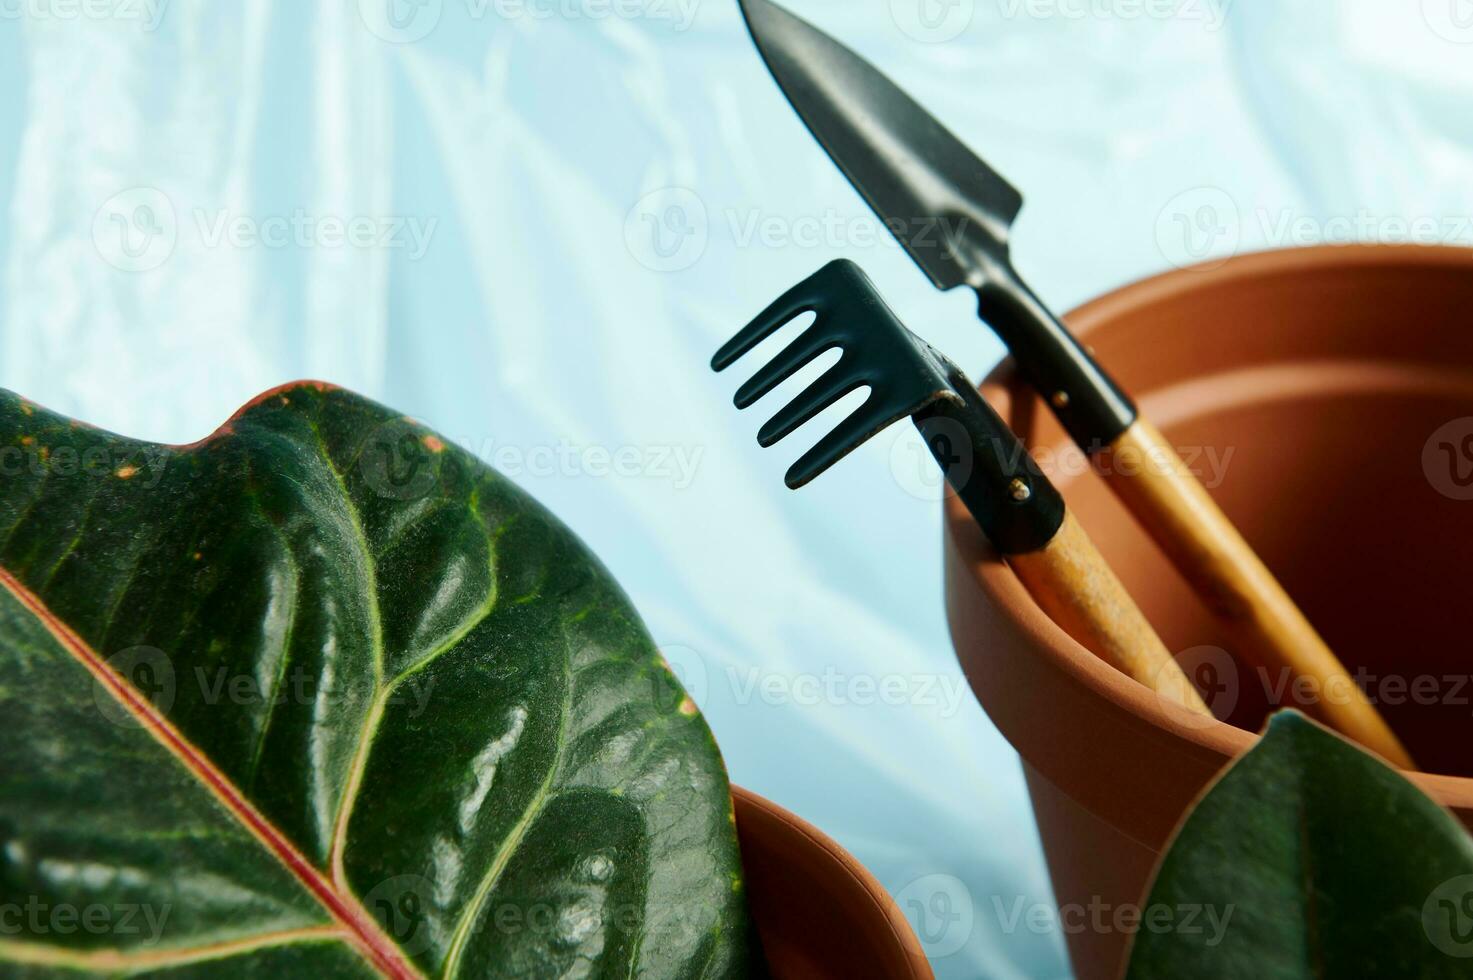 fermer de ensemble de petit jardinage râteau et pelle dans une terre cuite argile pot avec une vert feuille sur le premier plan photo